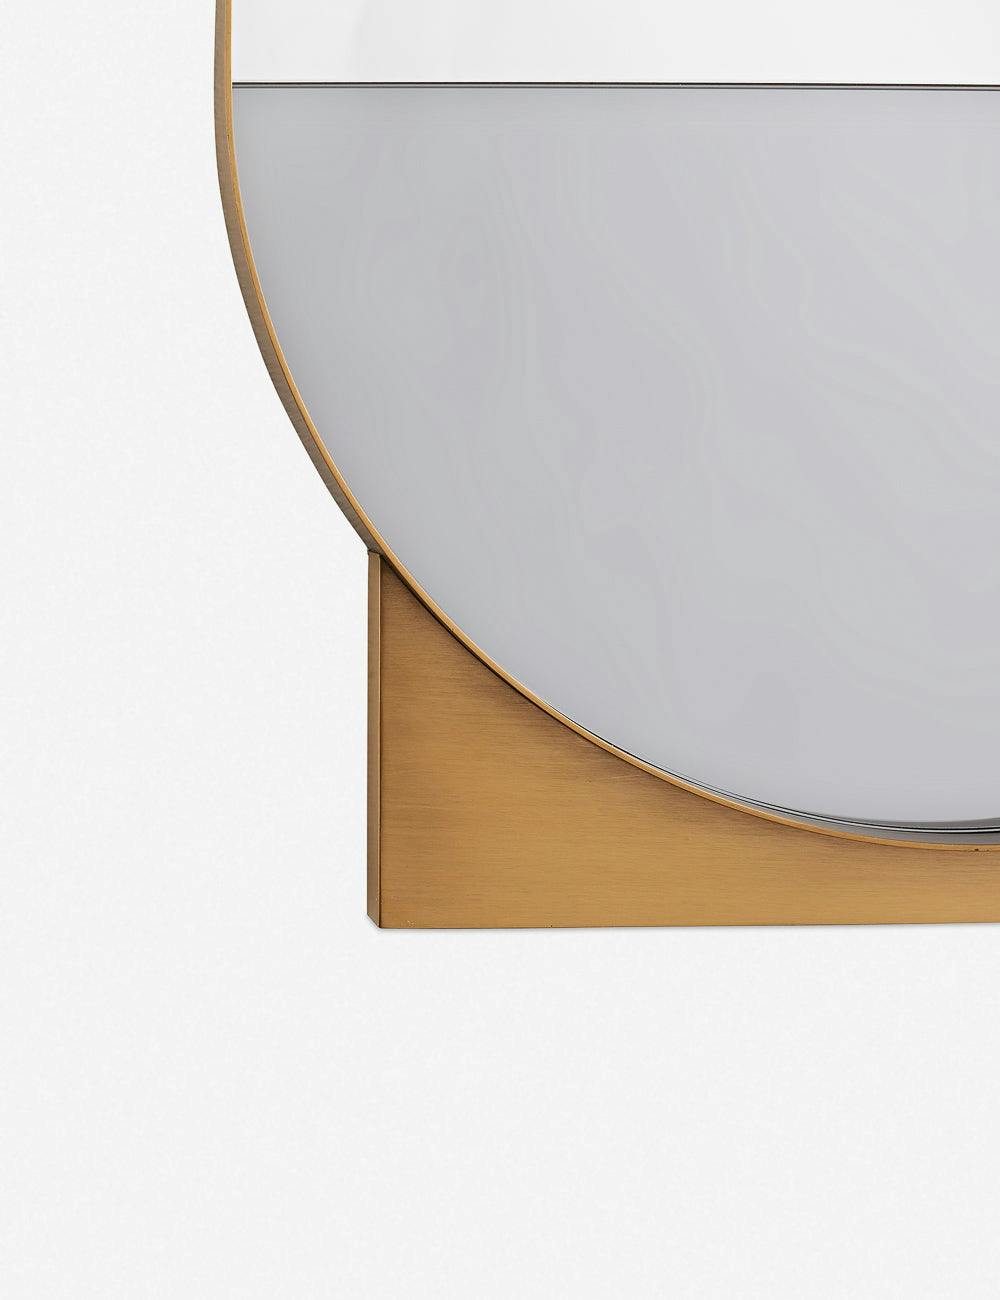 Arteriors Datum Floor Mirror by Workshop / APD - Gold